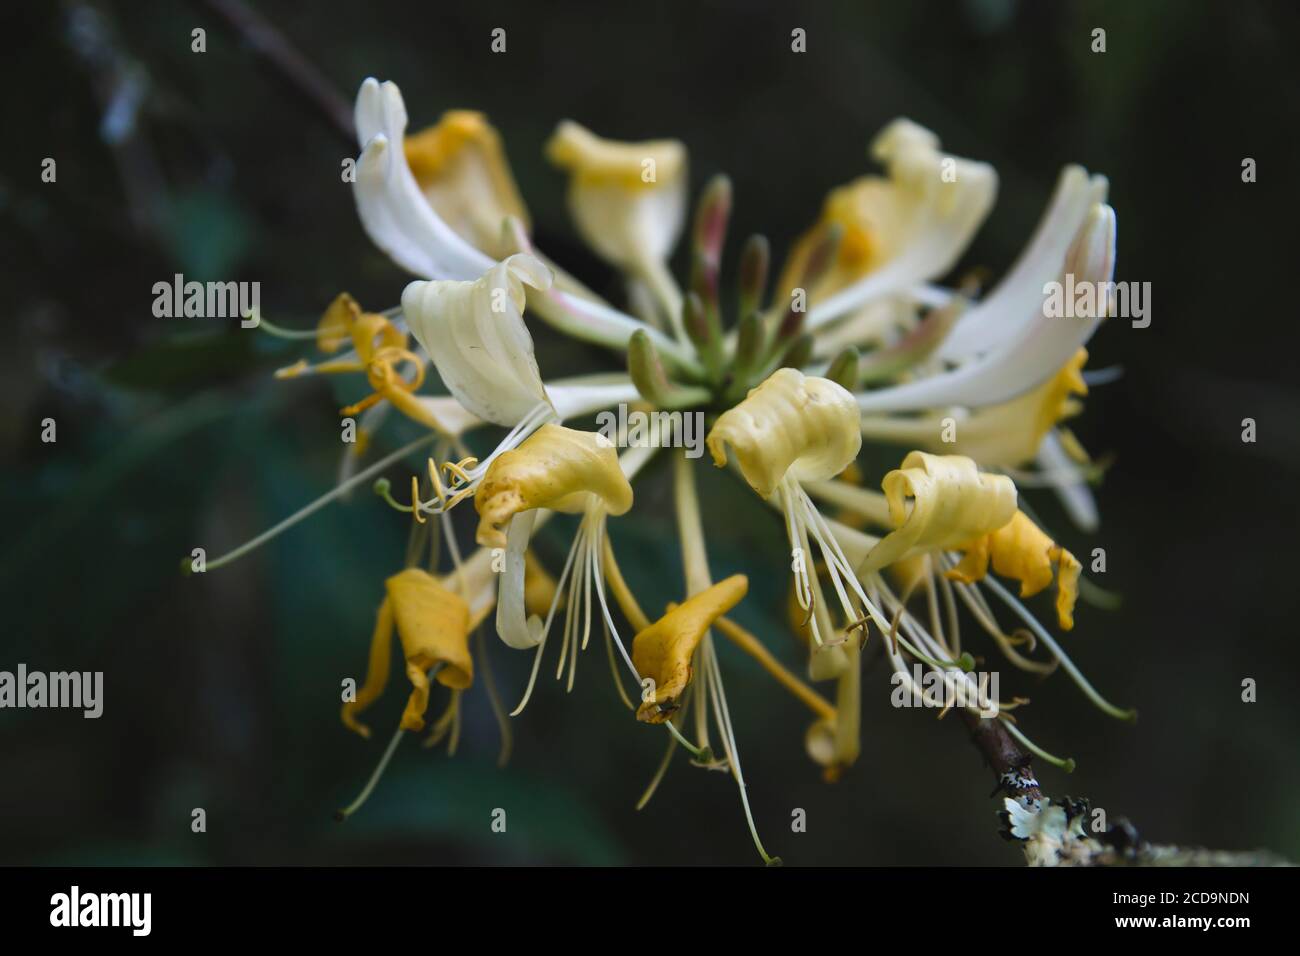 Detail of wild honeysuckle yello flower Stock Photo